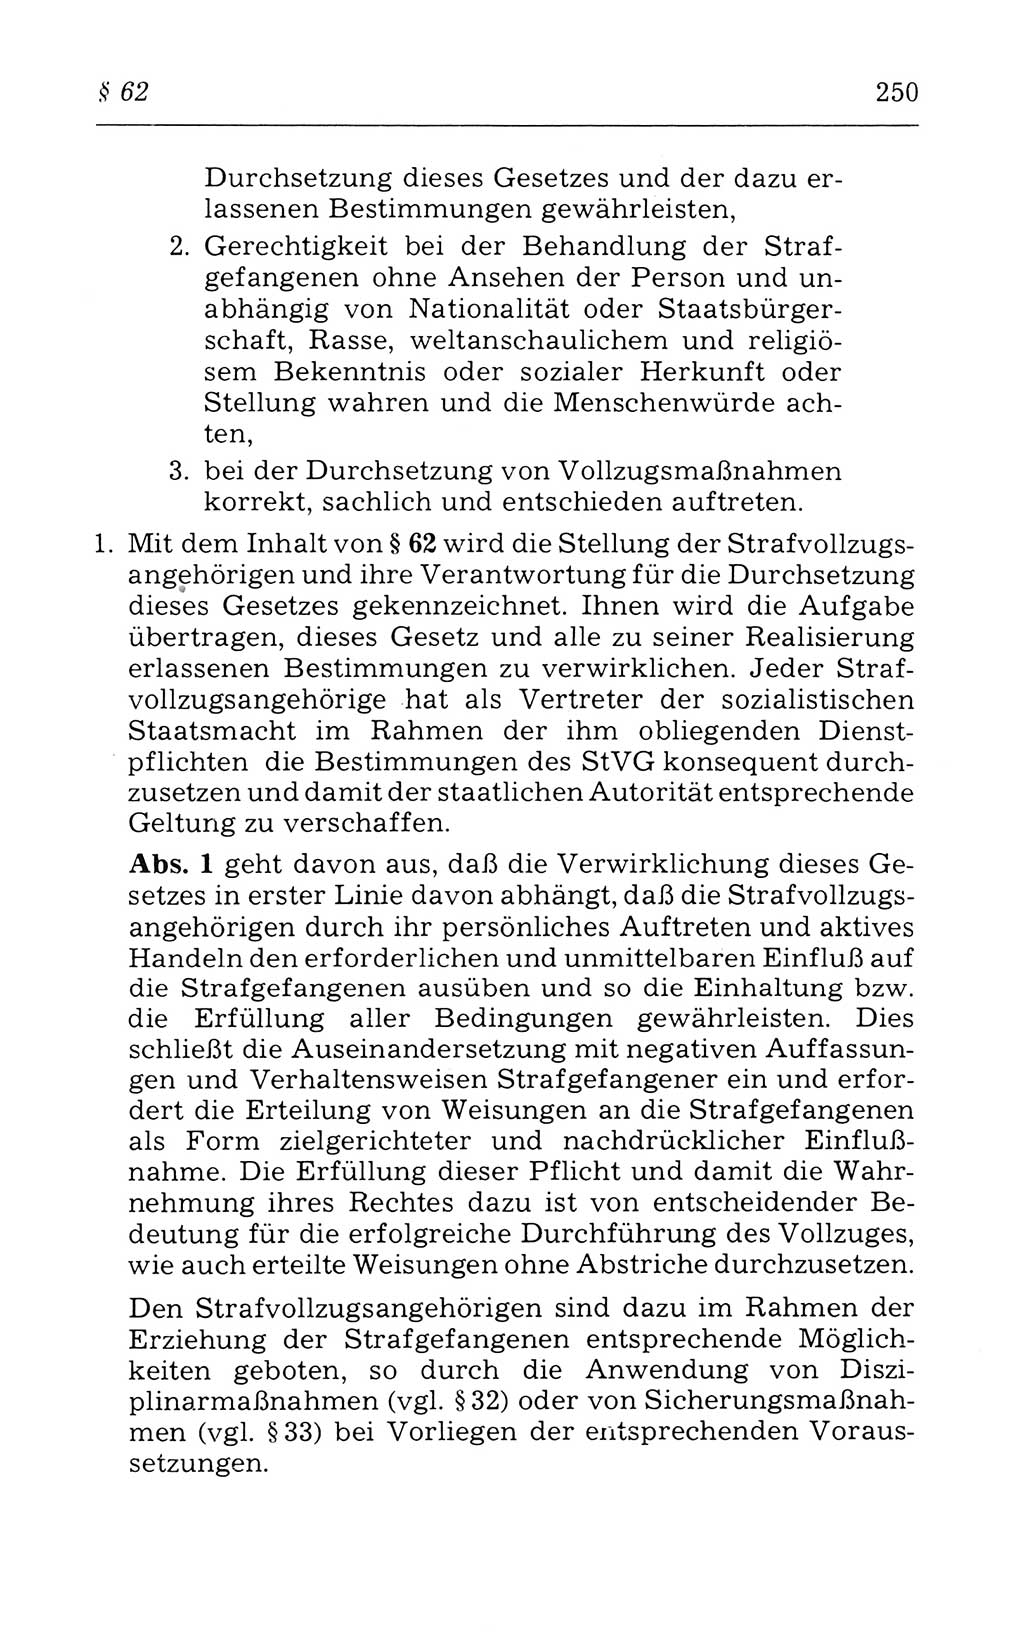 Kommentar zum Strafvollzugsgesetz [(StVG) Deutsche Demokratische Republik (DDR)] 1980, Seite 250 (Komm. StVG DDR 1980, S. 250)